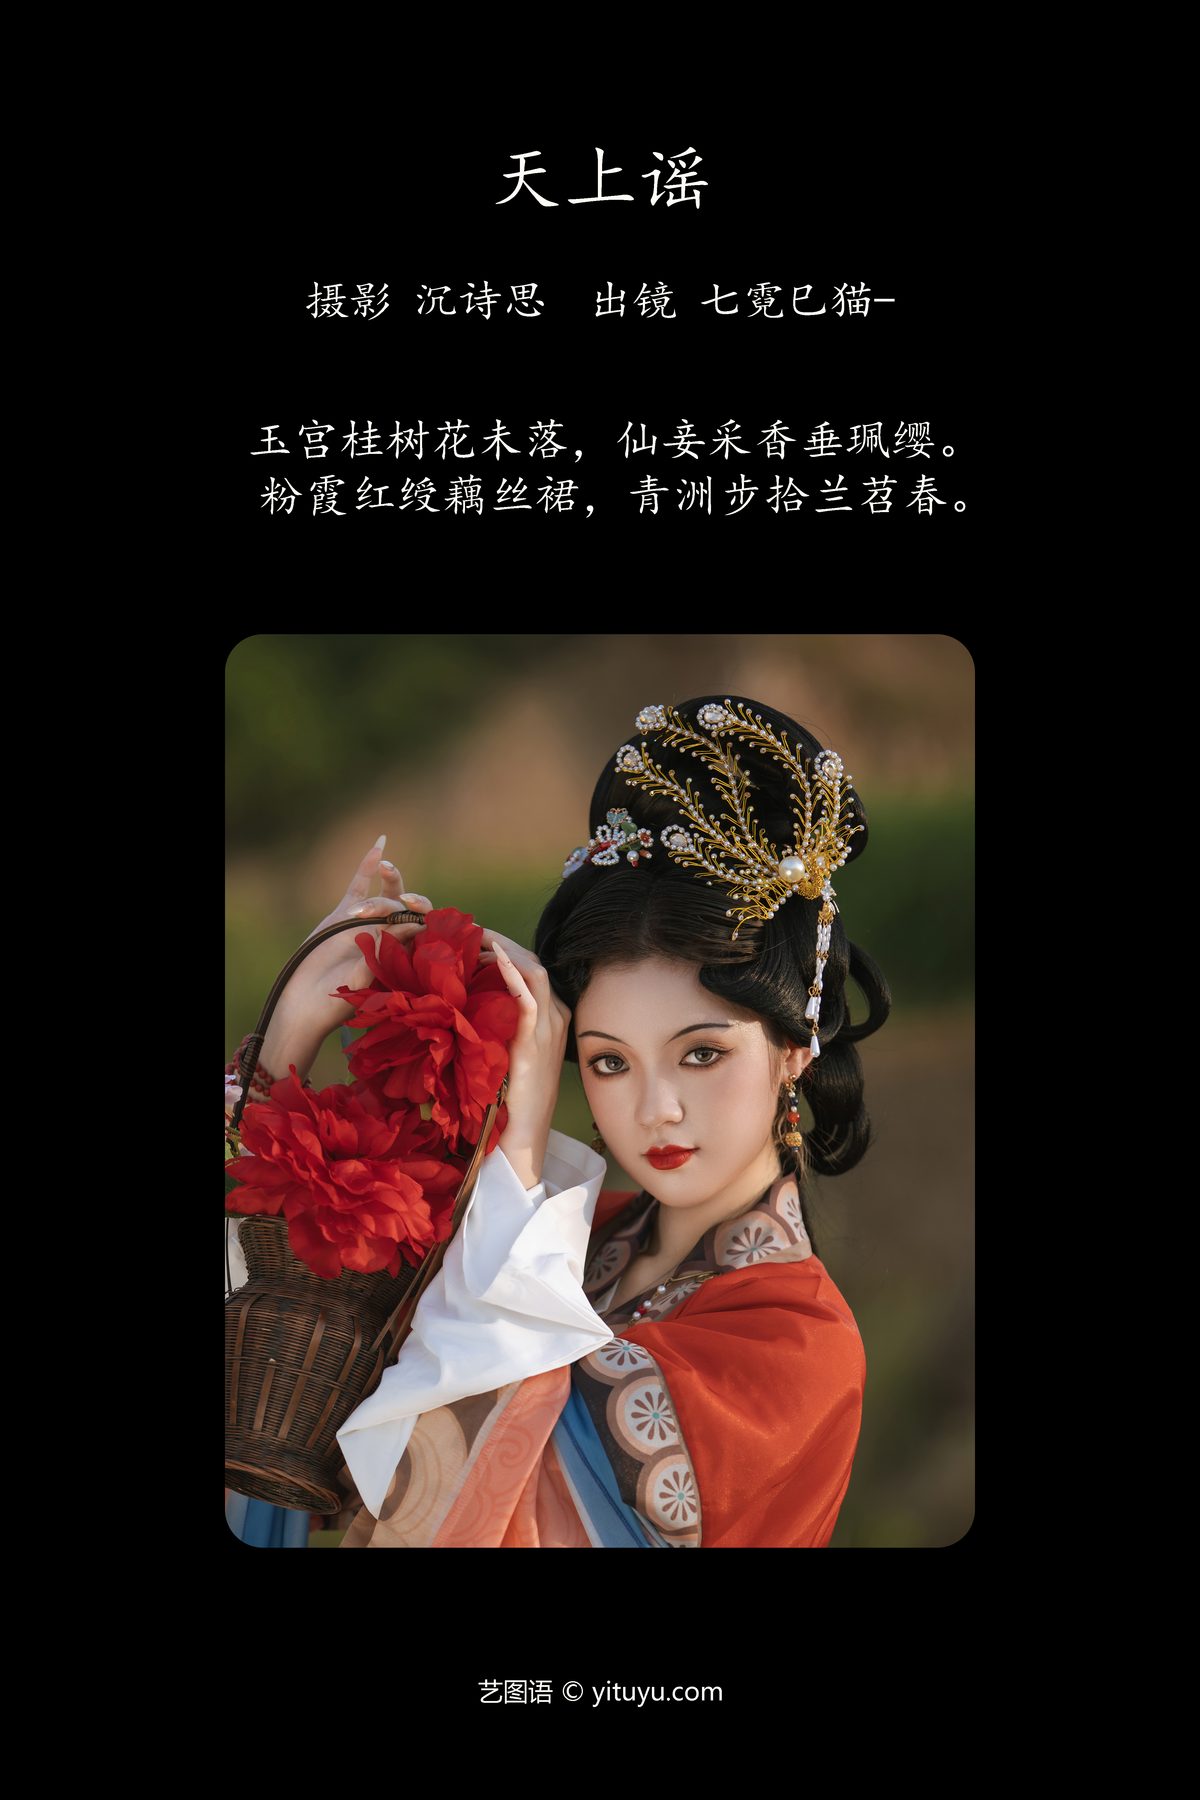 YiTuYu艺图语 Vol 5523 Qi Ni Si Mao 0002 4969088917.jpg